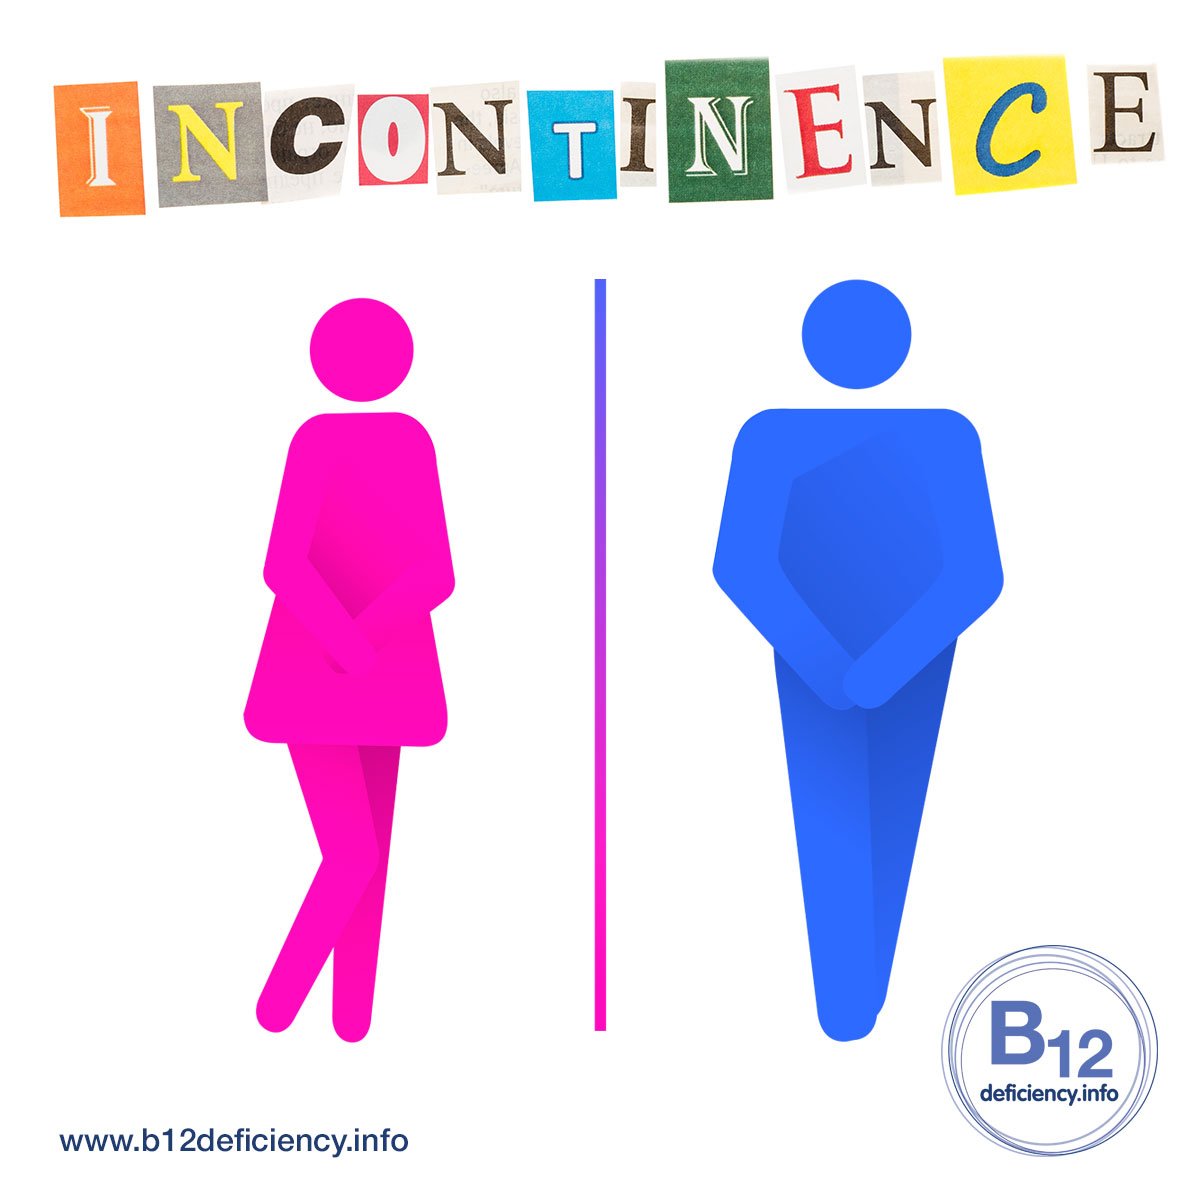 Incontinence in women, men & children